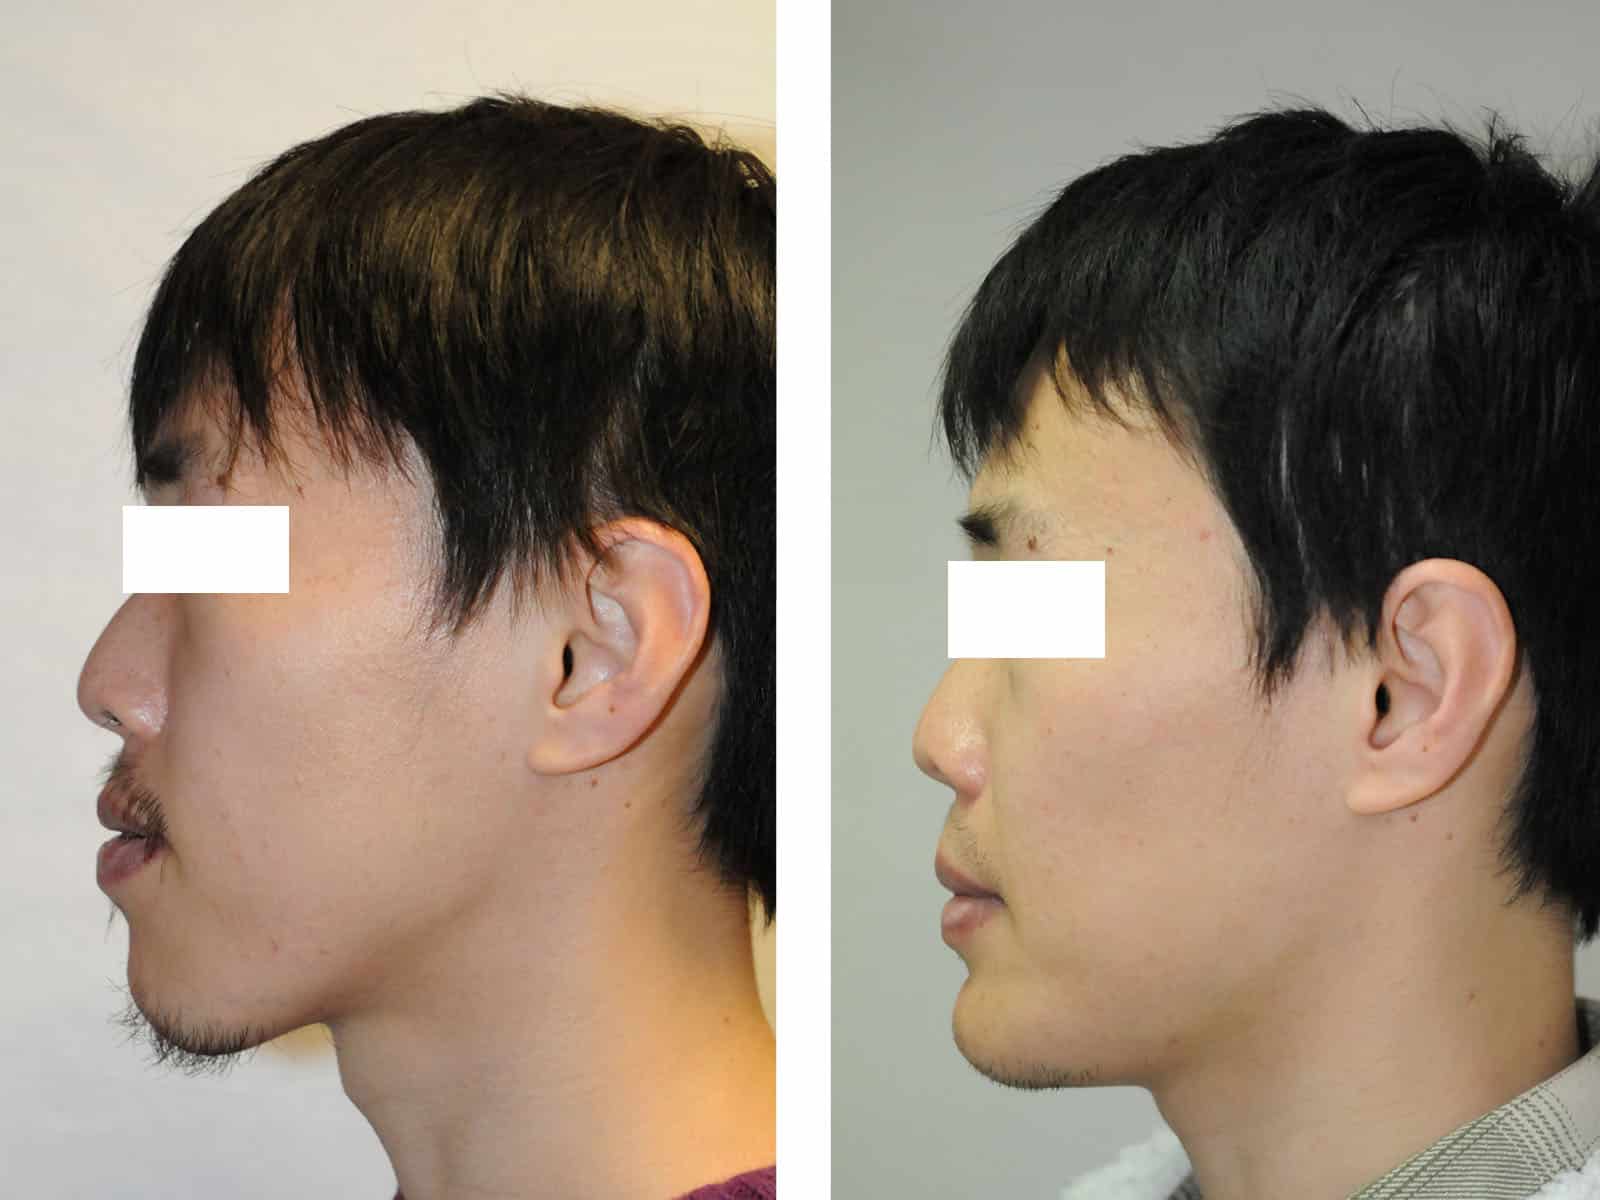 classe III distraction disjonction maxillaire lefort 1 classe III recentrage avant après chirurgie maxillo facial paris génioplastie dr loncle